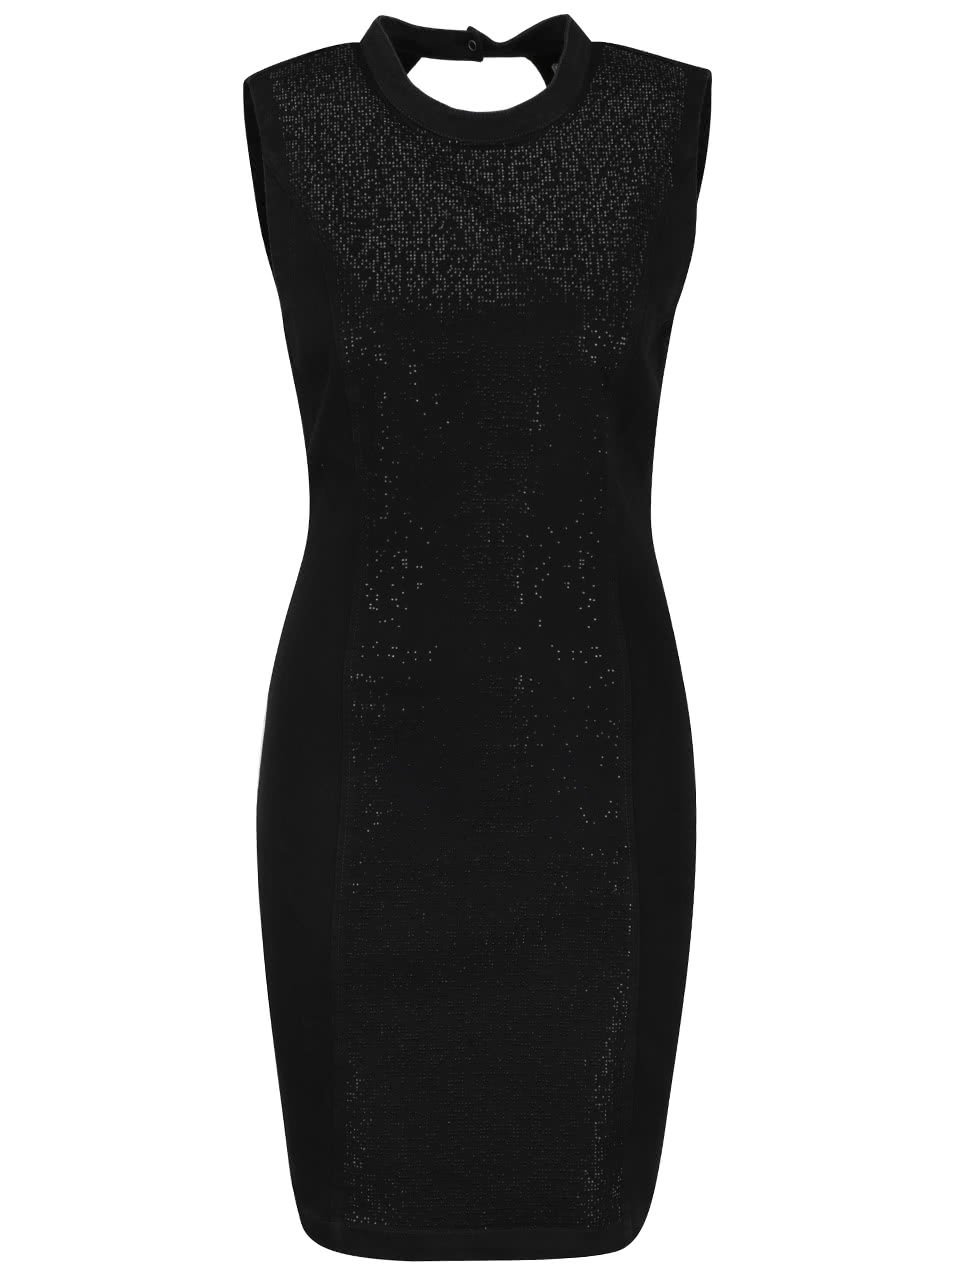 Černé krátké šaty se třpytivou aplikací Vero Moda Shine